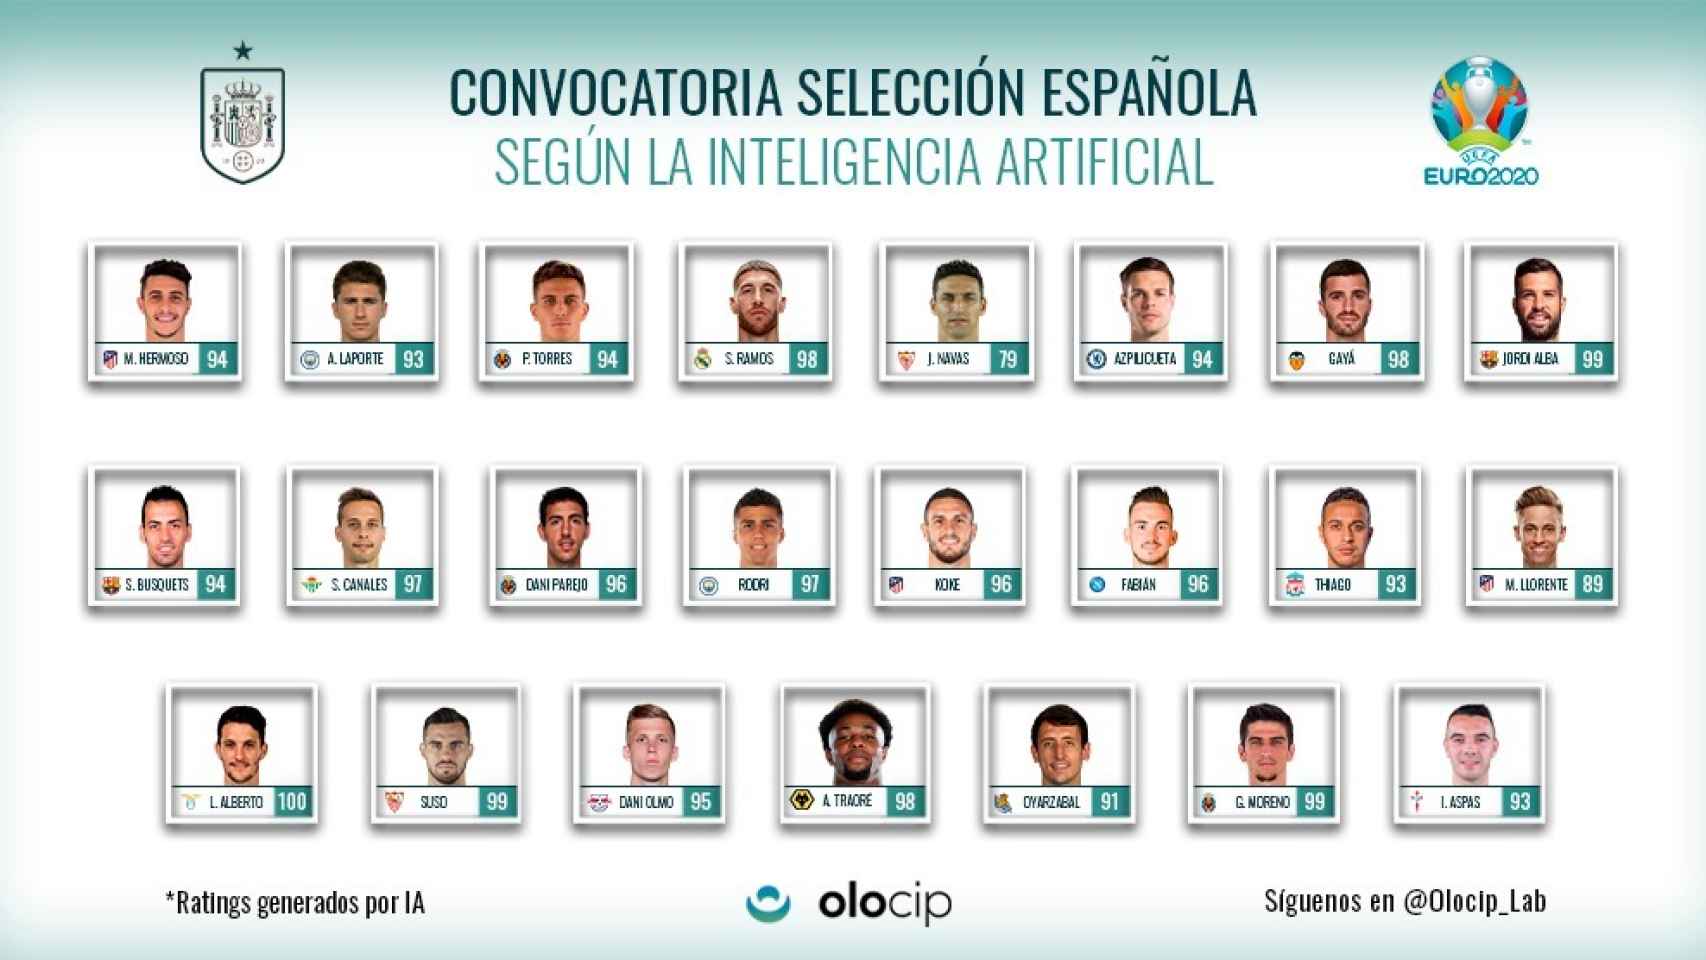 La convocatoria de España de Olocip utilizando inteligencia artificial para la Eurocopa